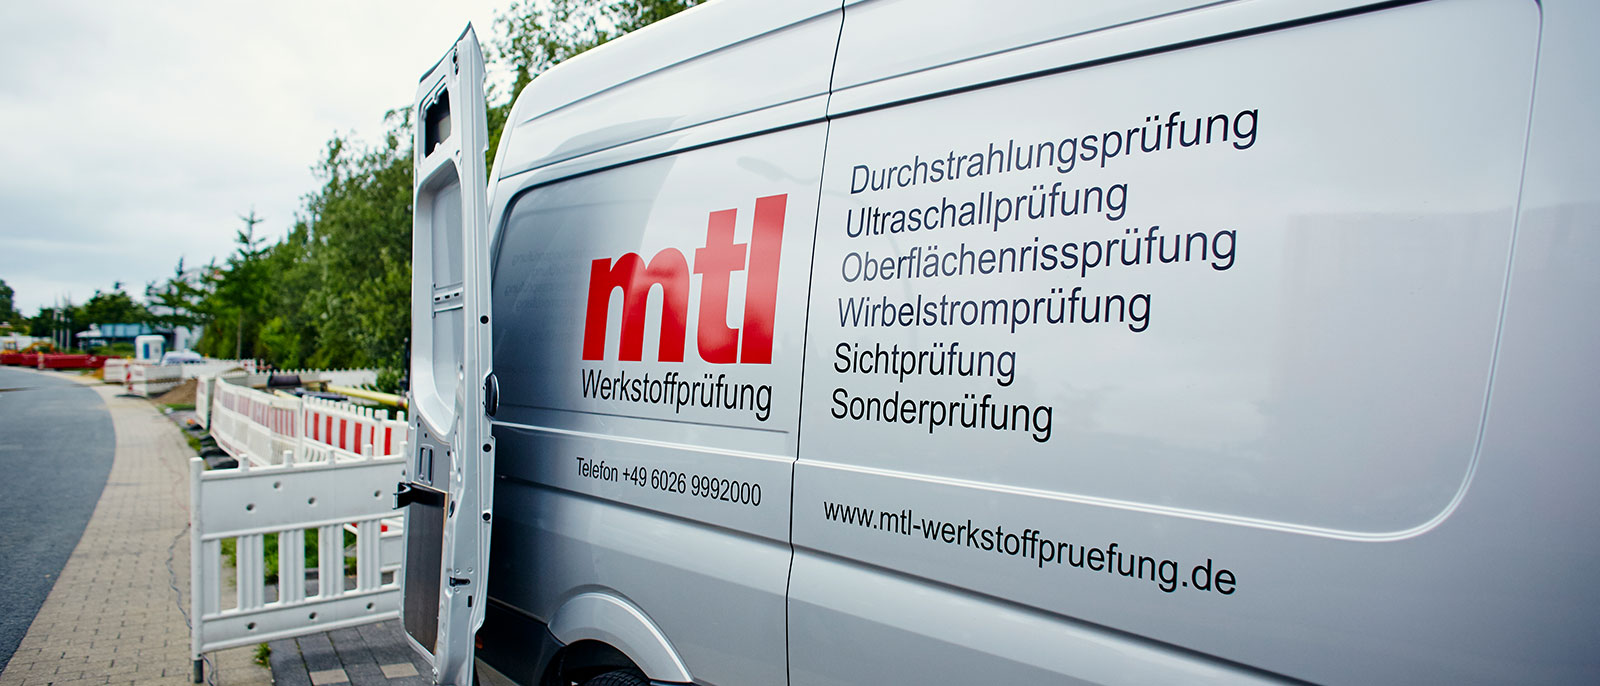 (c) Mtl-werkstoffpruefung.de